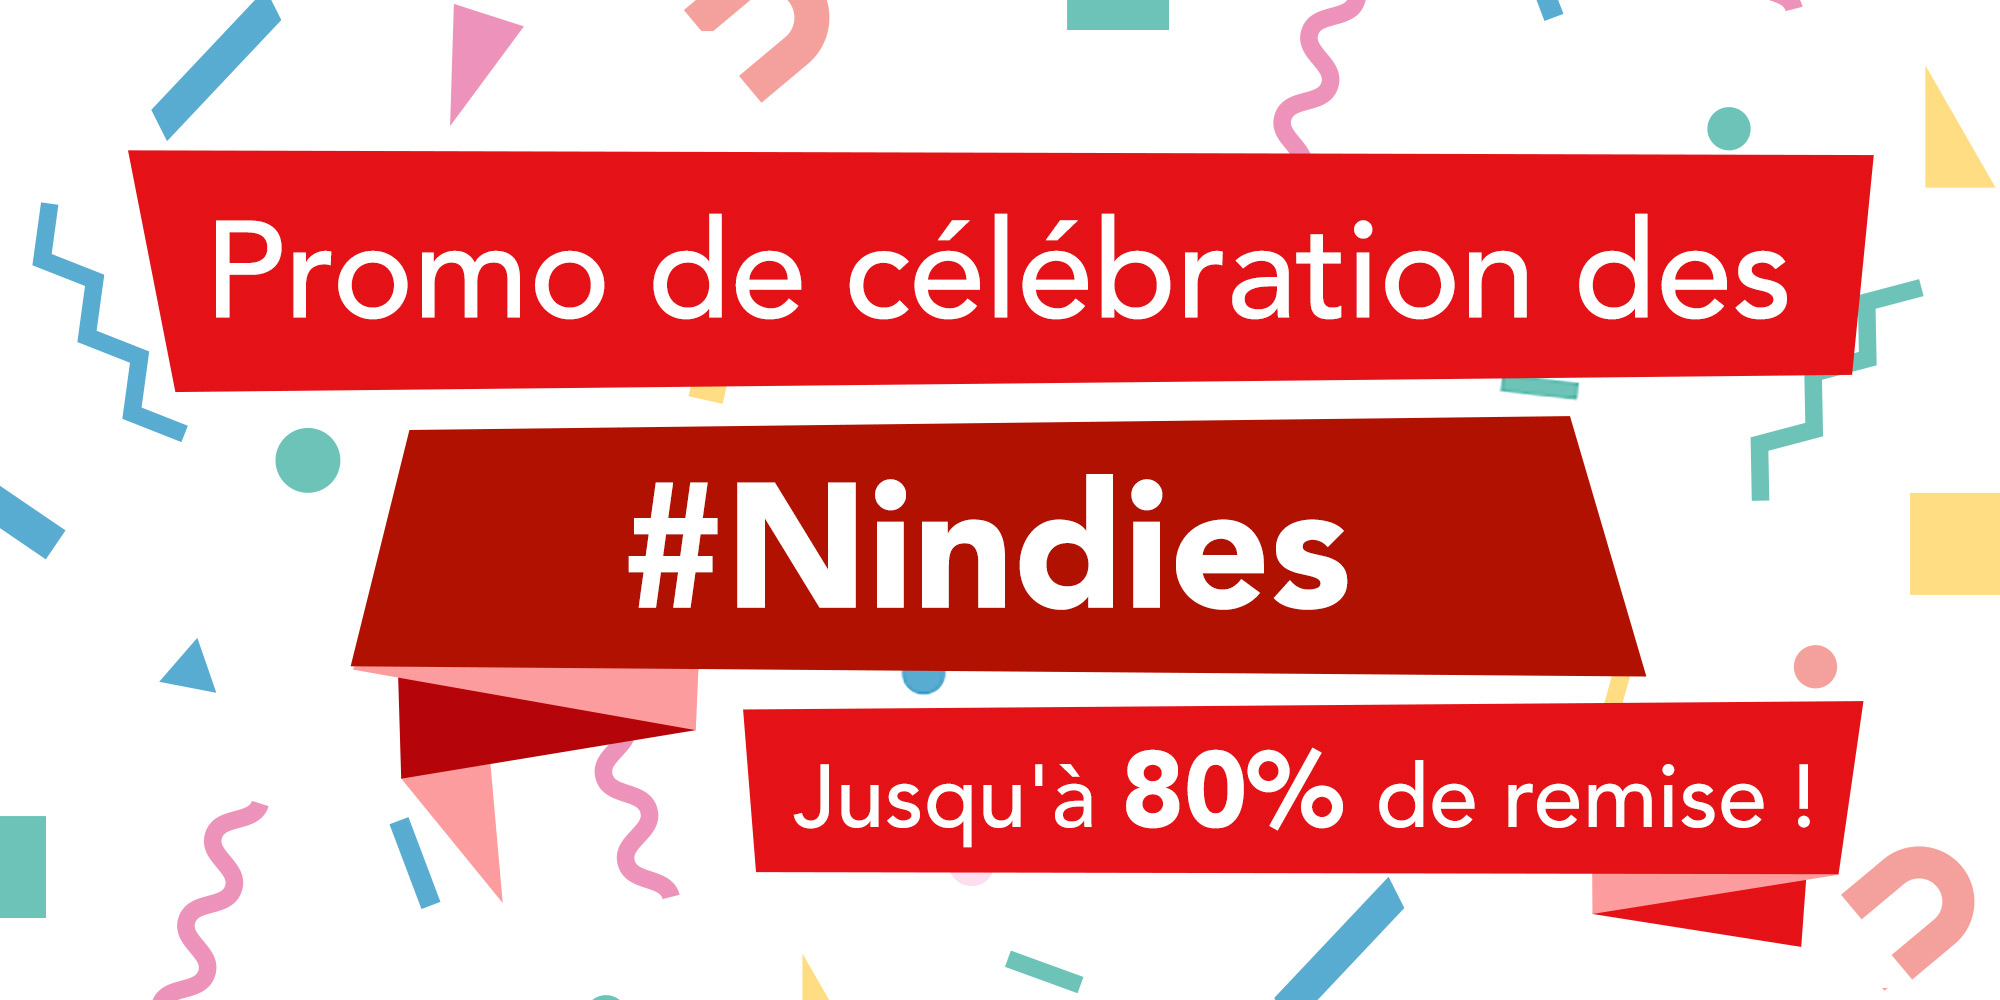 Offre Nintendo eShop : promo de célébration des #Nindies